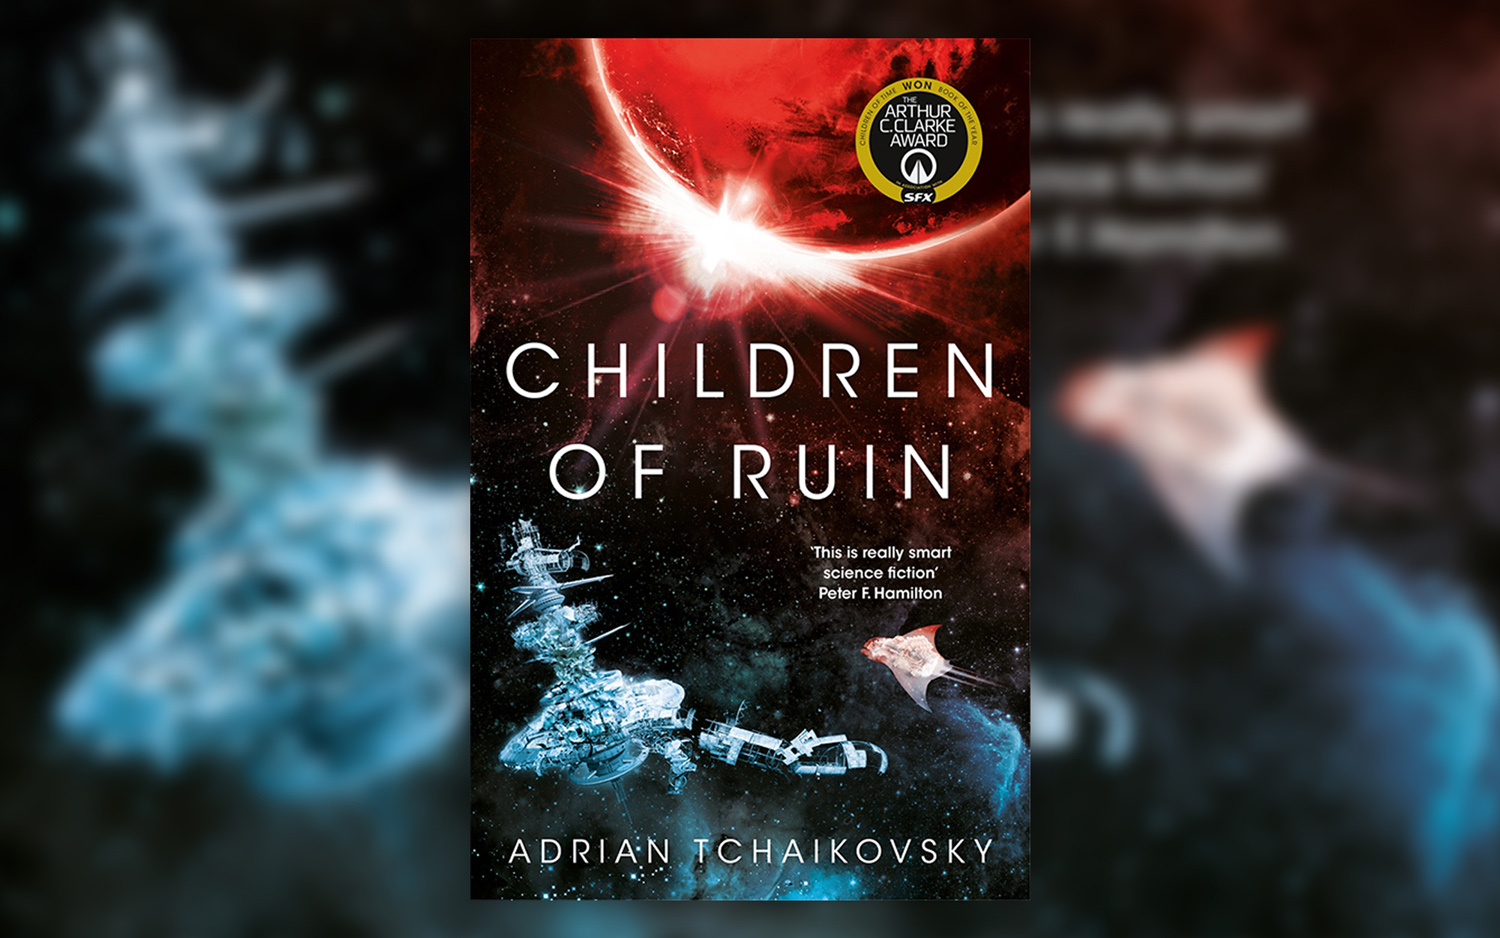 Children of Ruin by Adrian Tchaikovsky